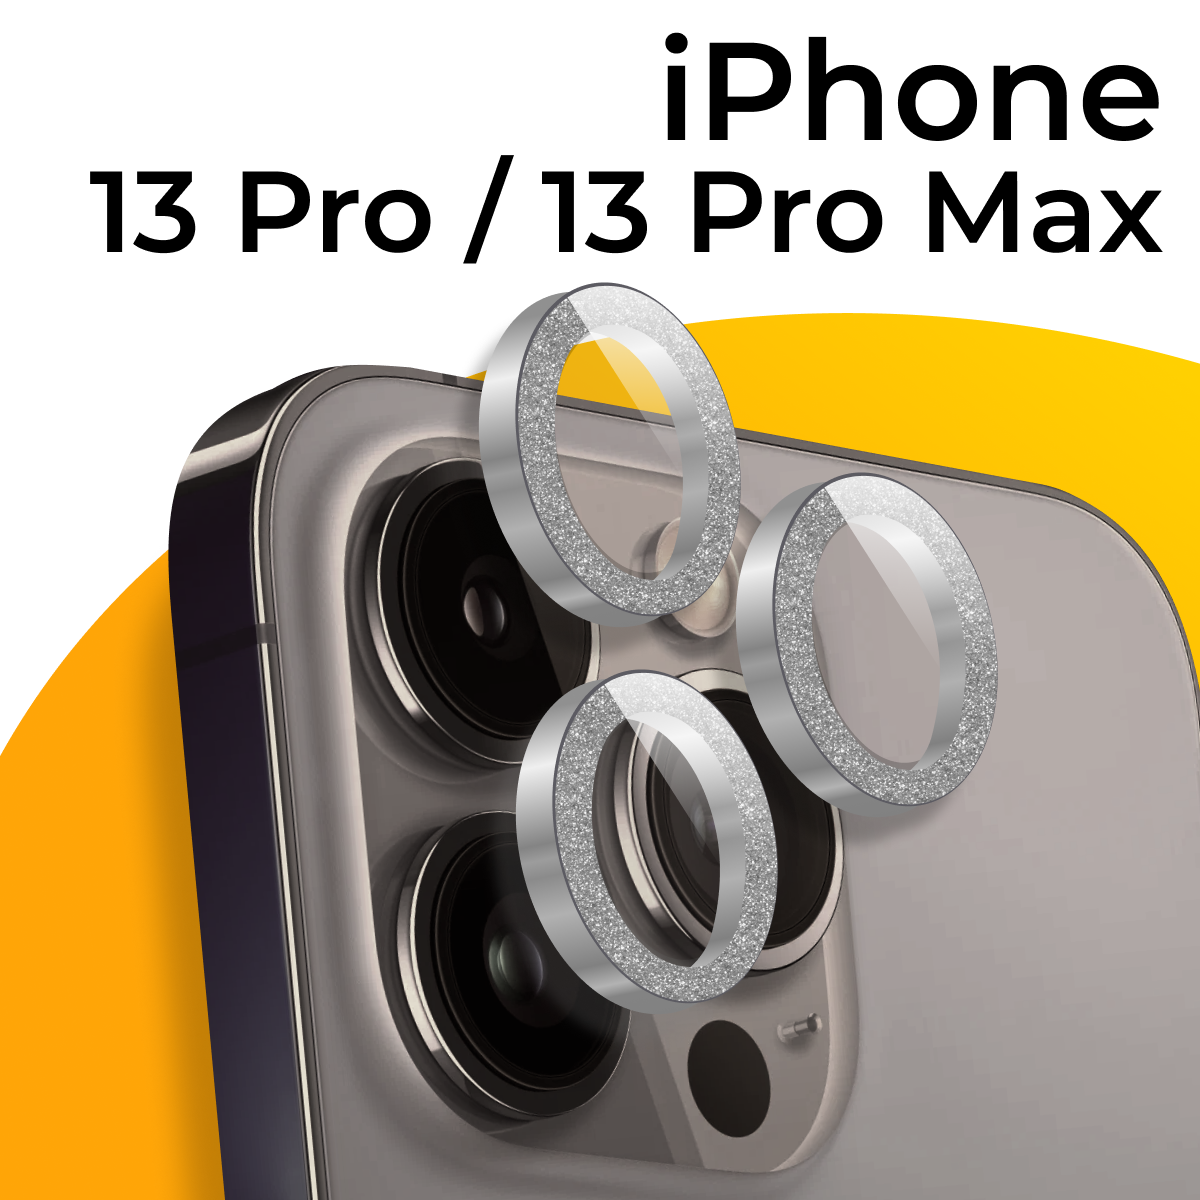 Комплект защитных линз для камеры телефона Apple iPhone 13 Pro и 13 Pro Max / Линзы на камеру Эпл Айфон 13 Про и 13 Про Макс с блестками / Серебрянный